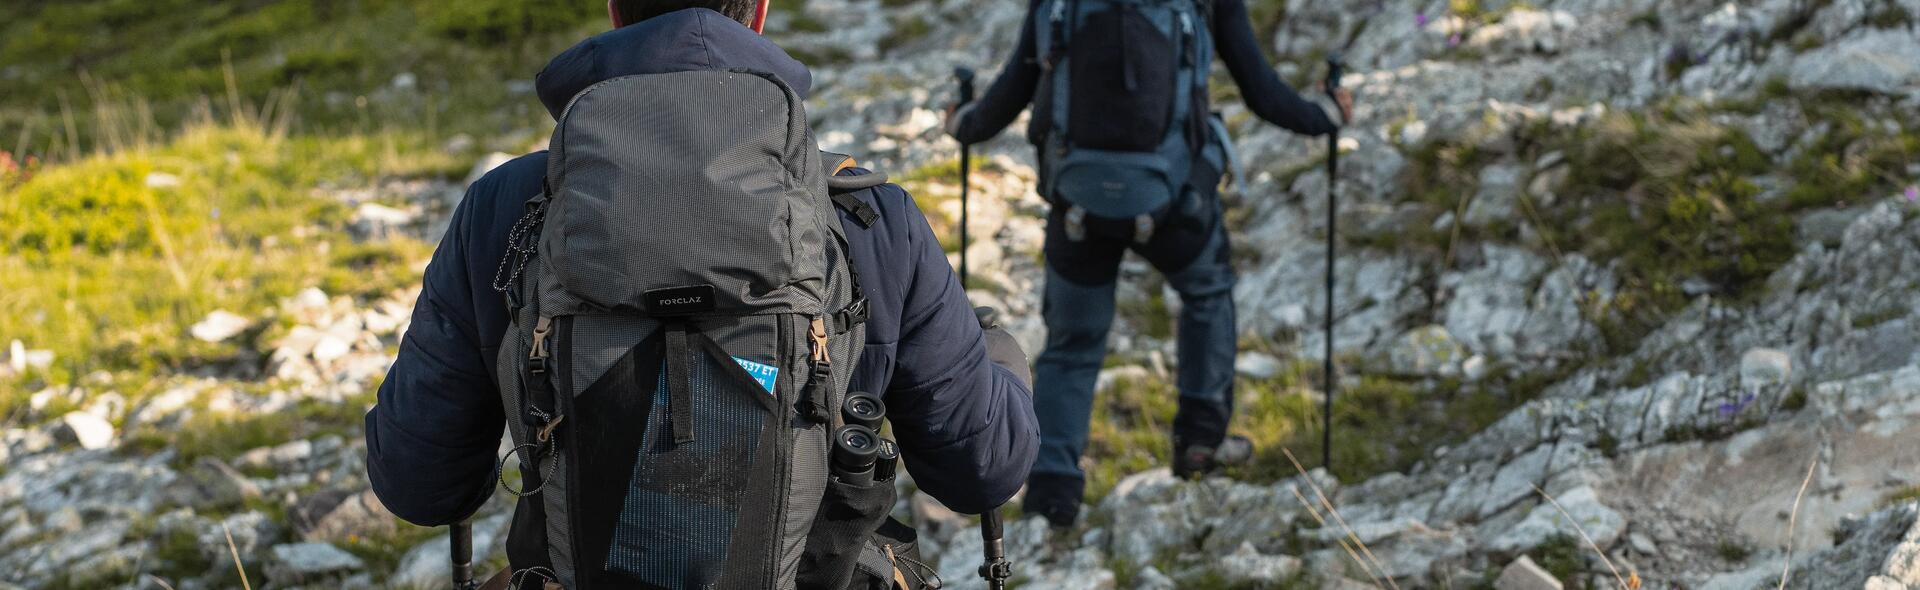 kobieta i mężczyzna wędrujący po górach z kijkami trekkingowymi i plecakami turystycznymi na plecach